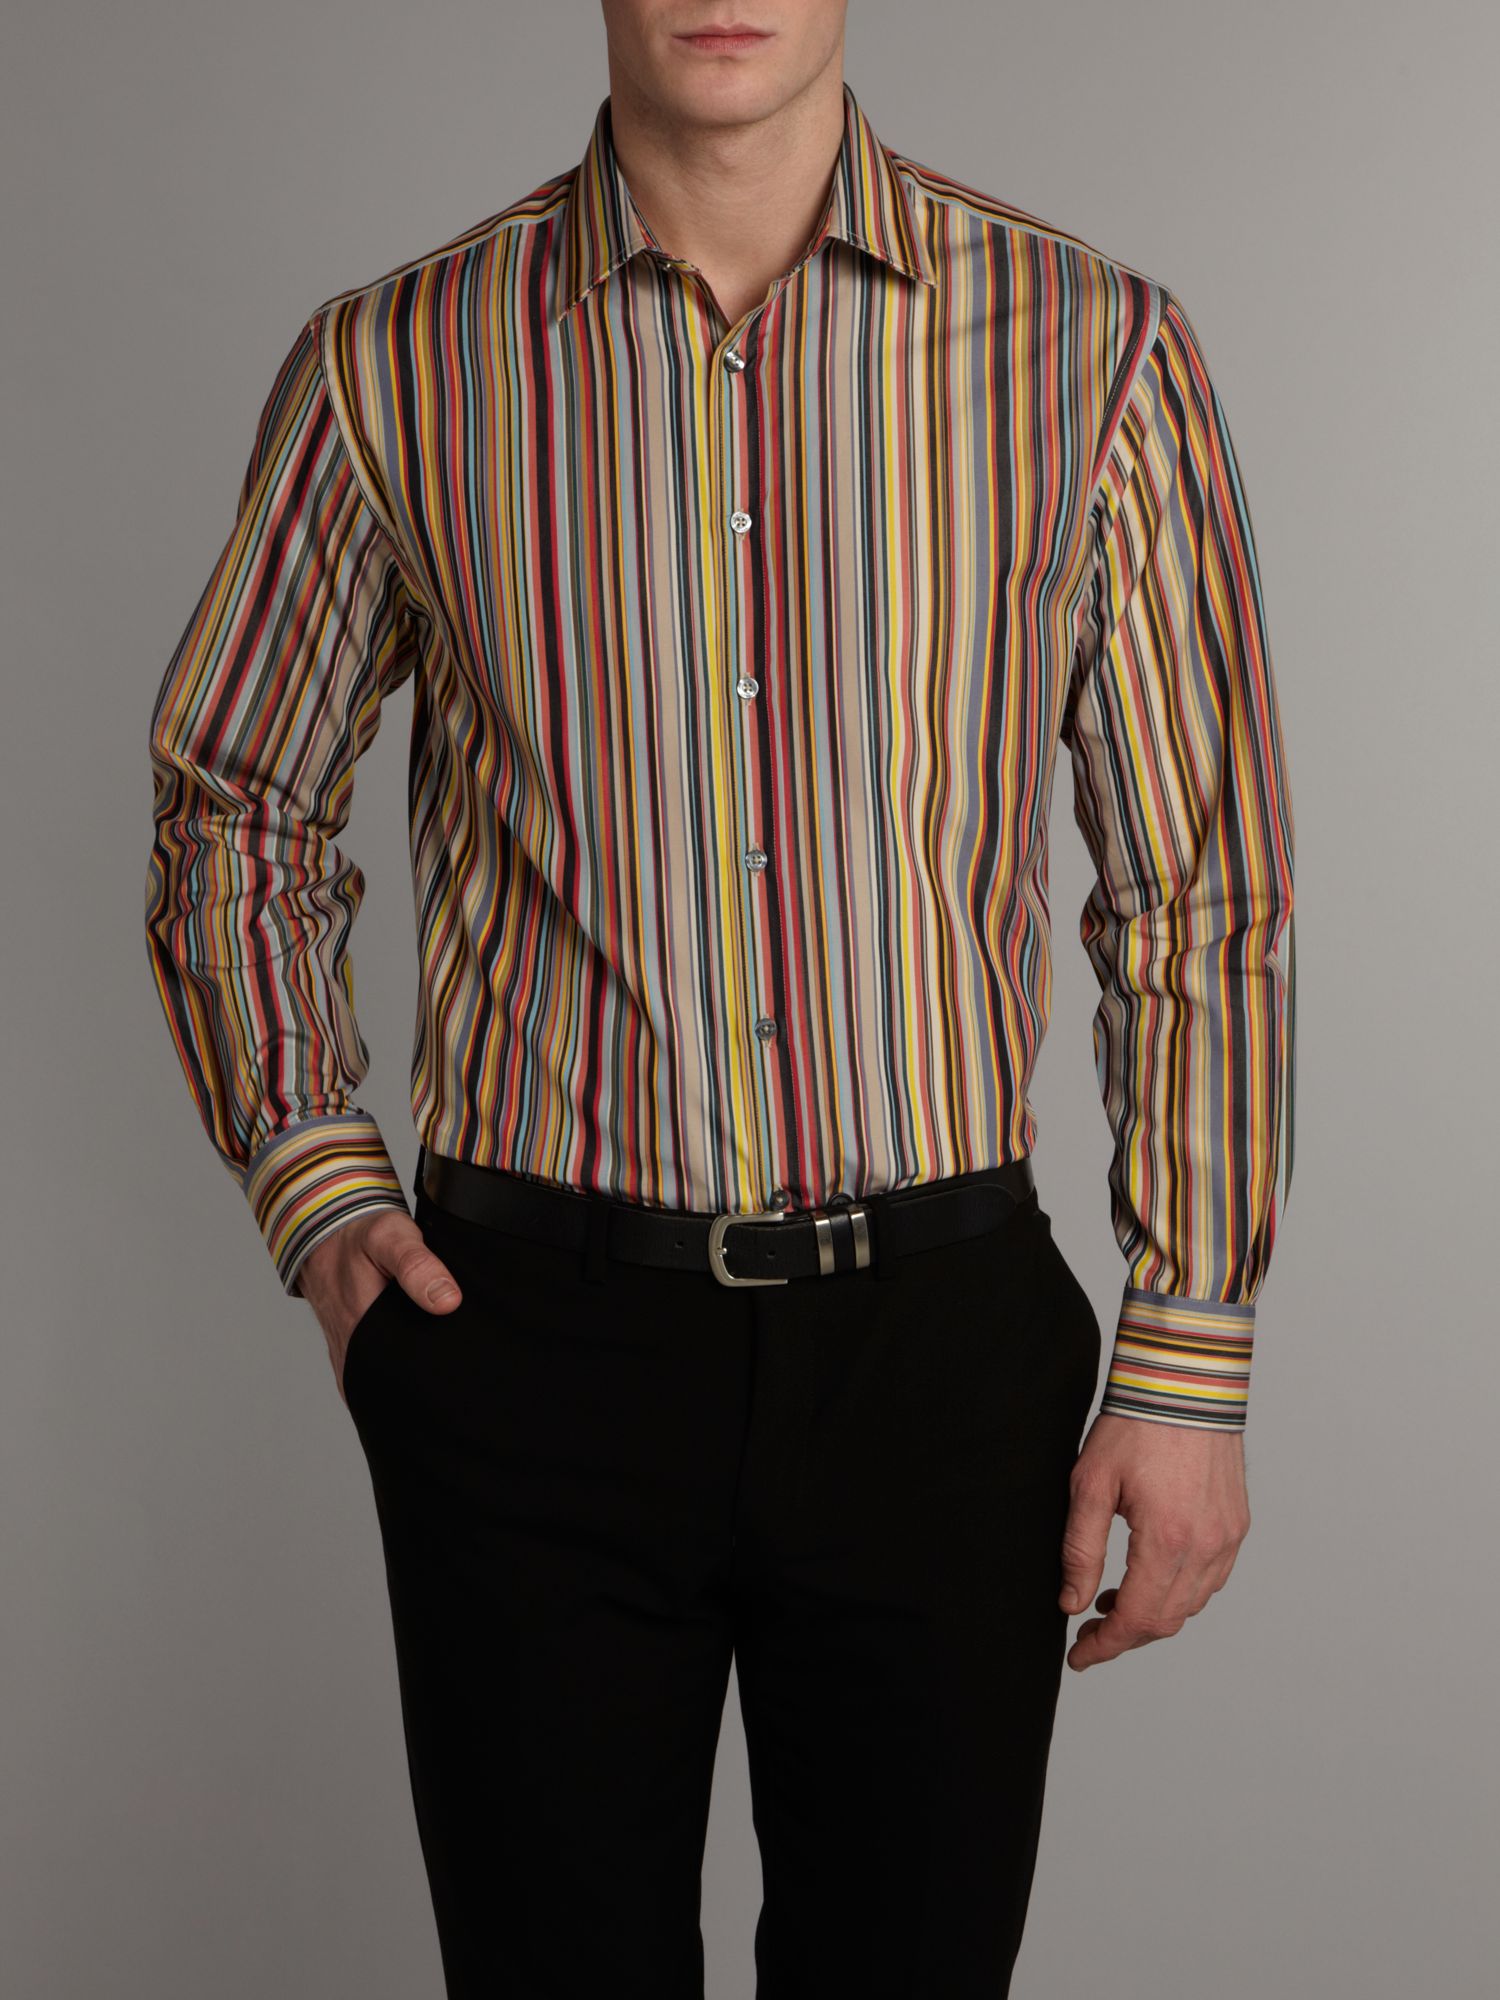 Lyst - Paul Smith Formal Cotton Longsleeved Stripe Shirt for Men